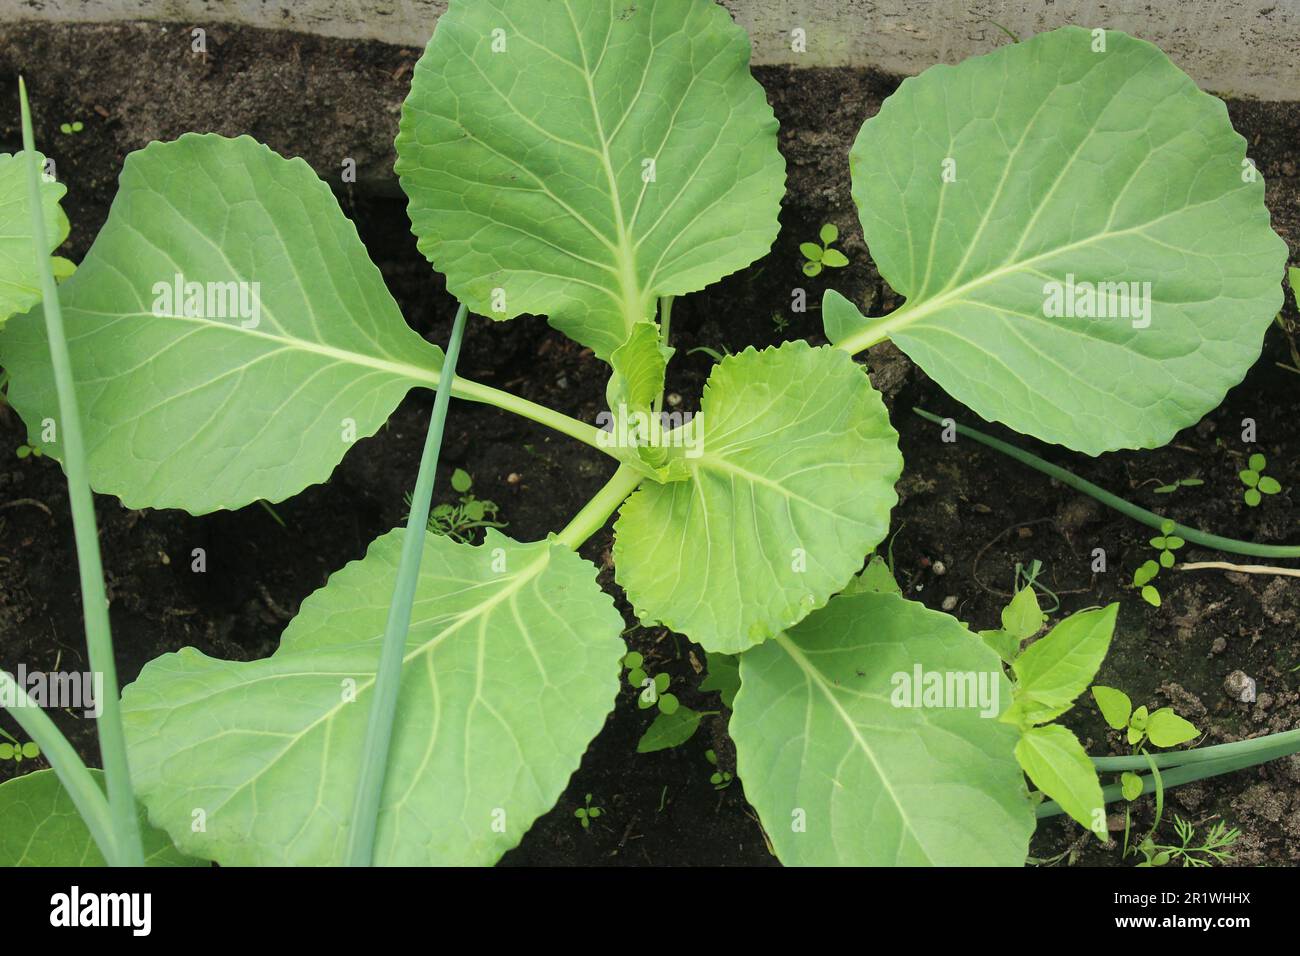 Plántulas de col. La col joven crece en el suelo. cultivo de verduras. Cómo cultivar plántulas de repollo. Foto de stock